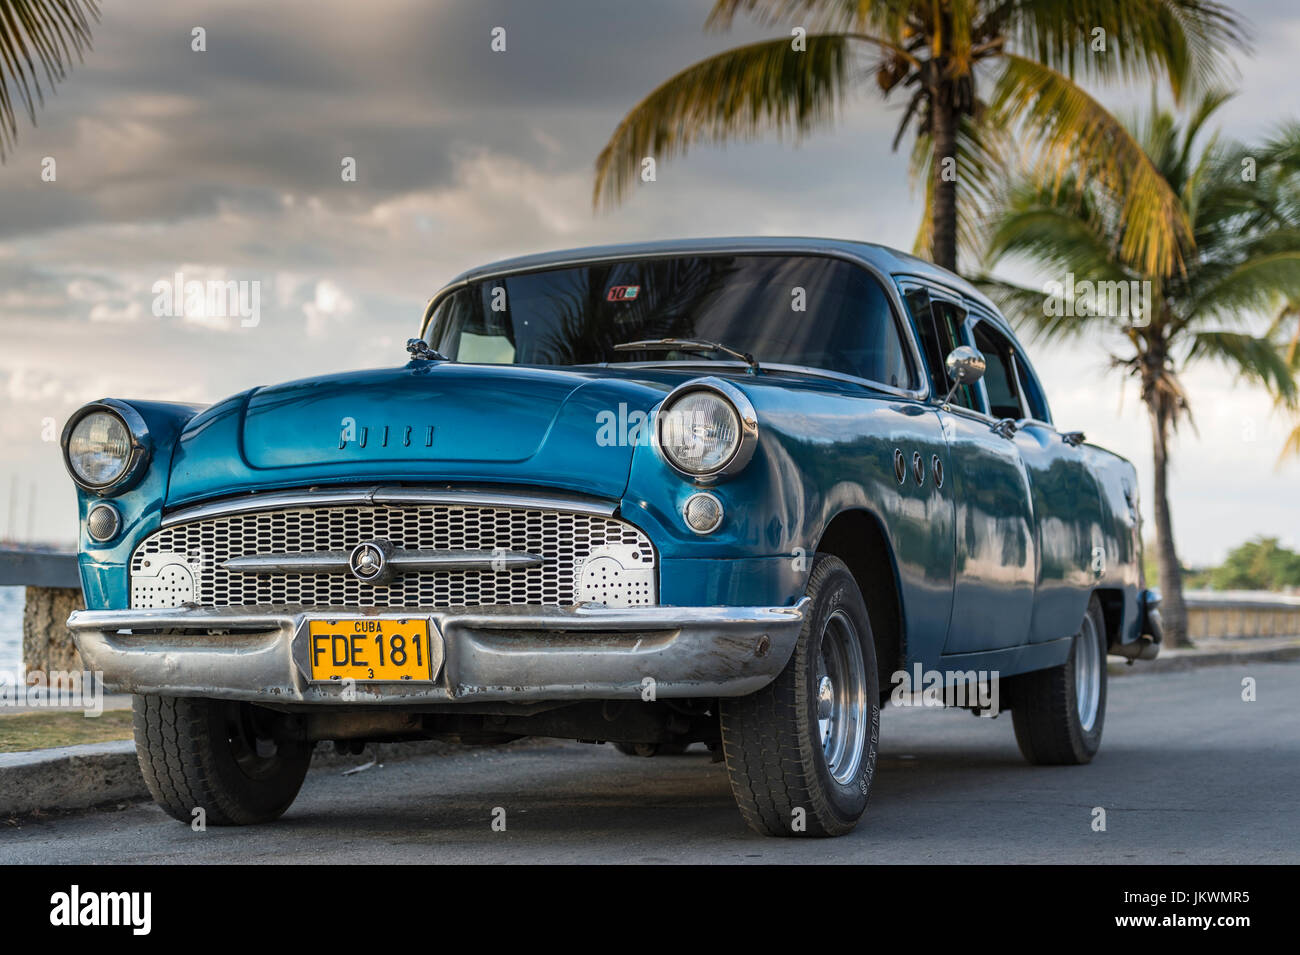 Buick - auto classica a Cuba. I proprietari di auto classiche orgogliosi di mantenere e prendersi cura di queste vecchie auto. Embarghi hanno limitato le nuove vetture. Foto Stock